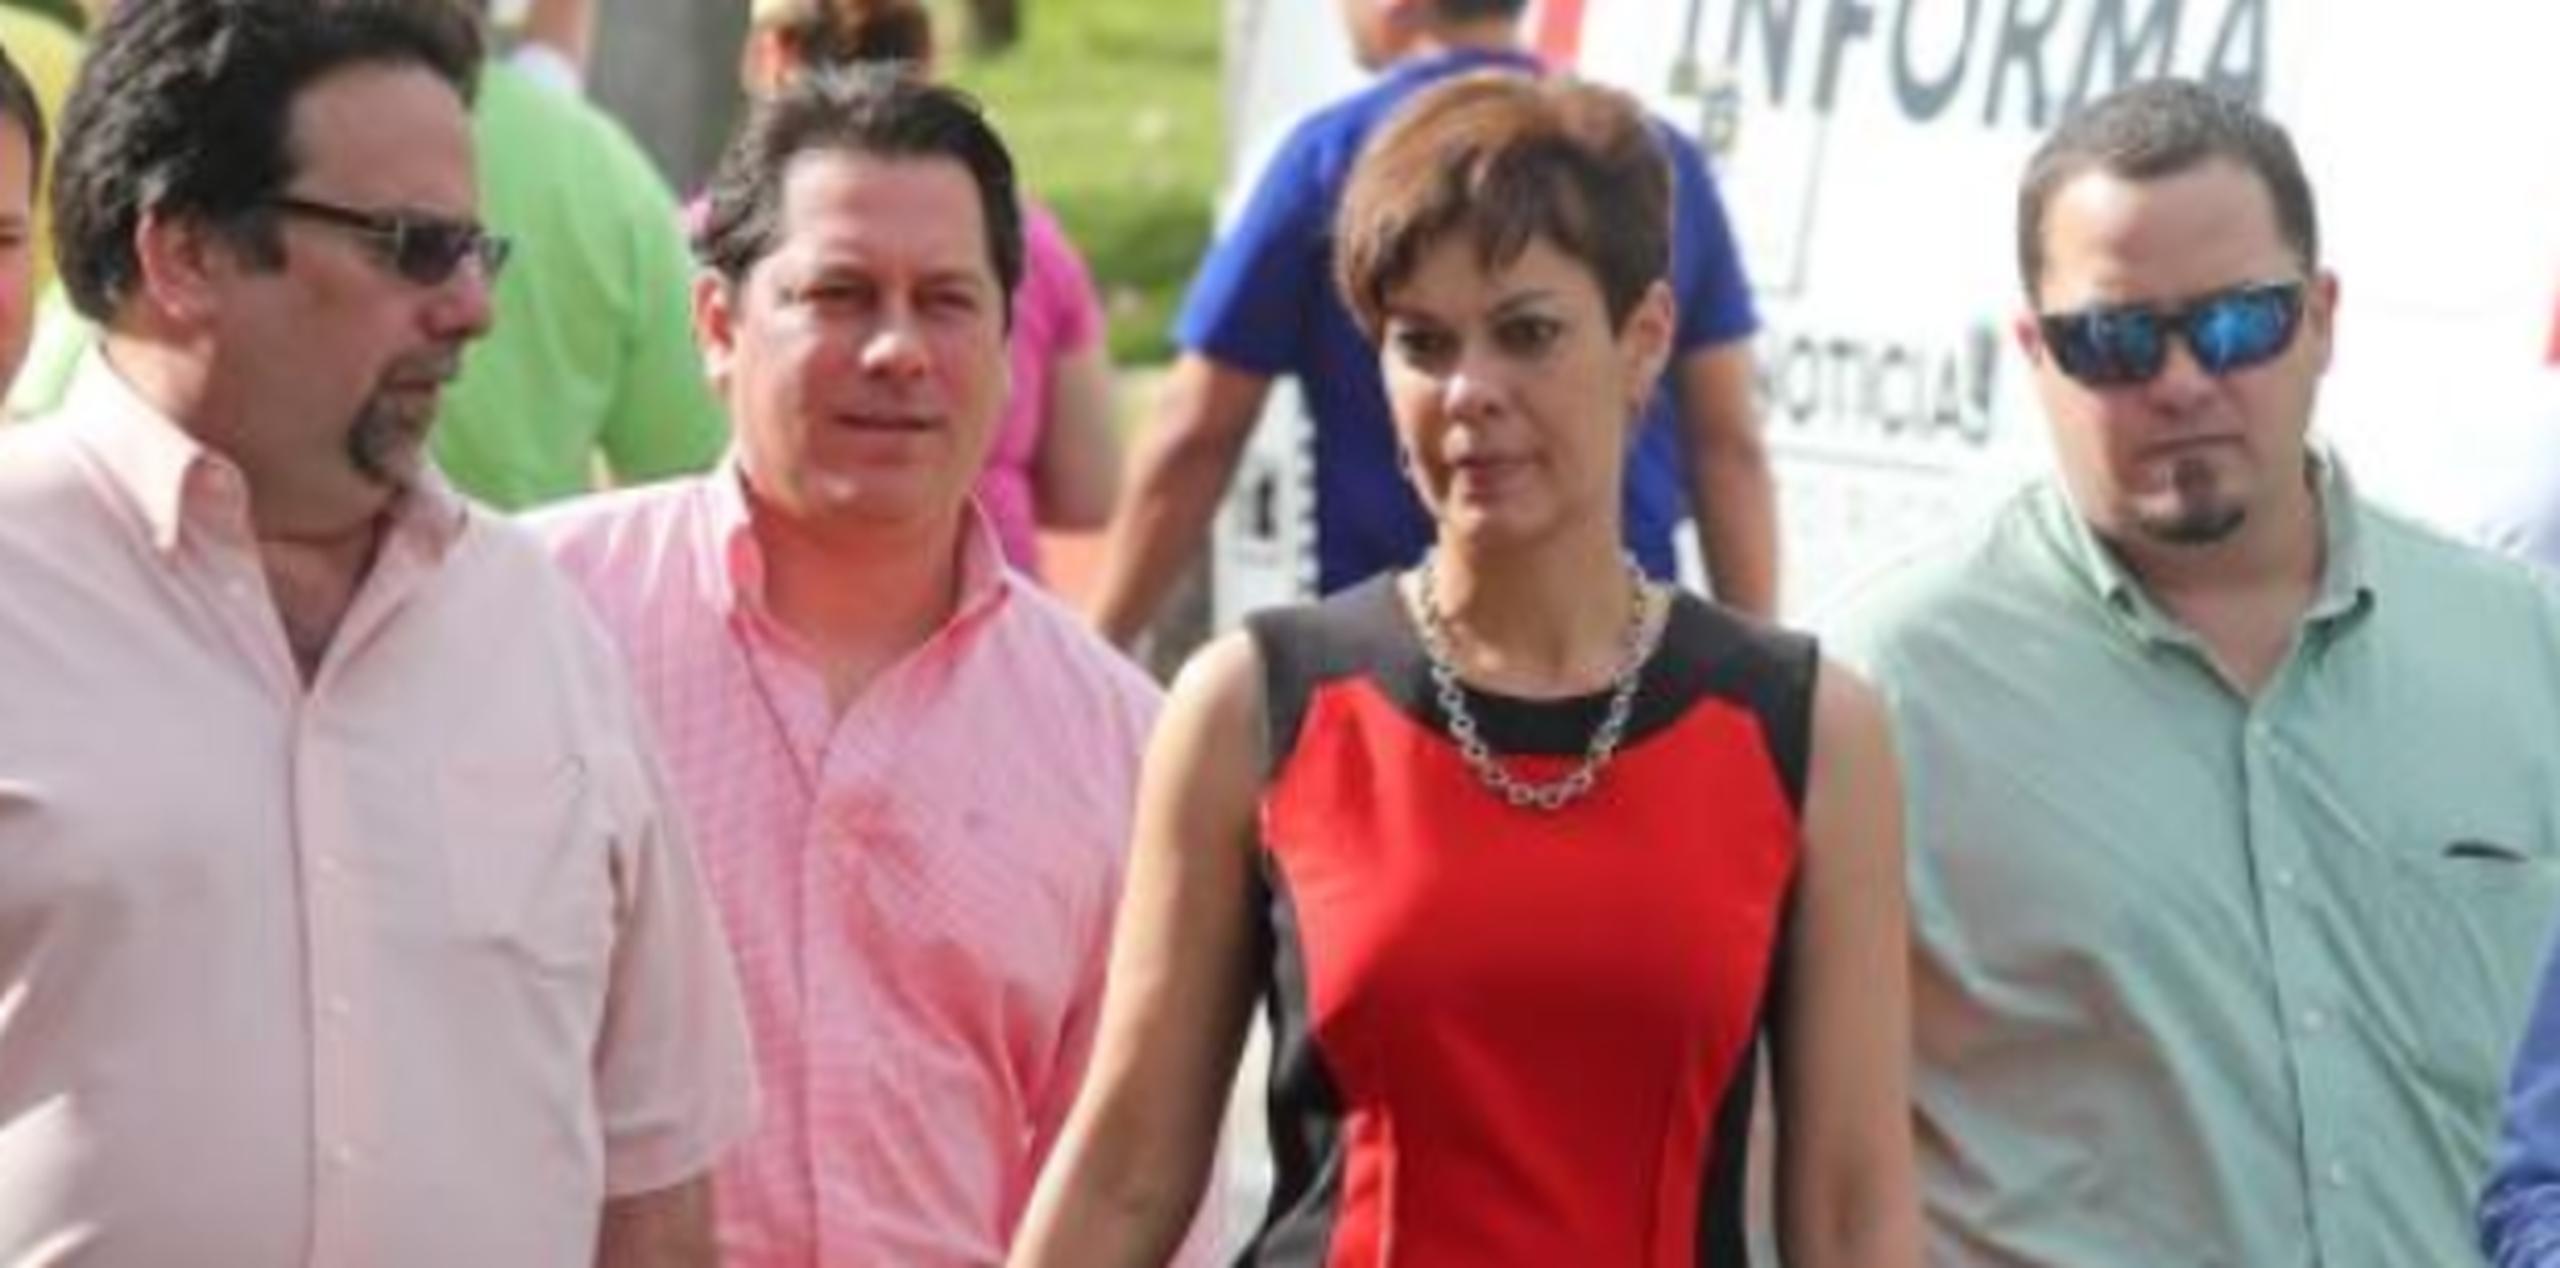 María de Lourdes Santiago en una marcha acompañada desde la izquierda por el candidato a representante Denis Márquez y por el candidato a senador Juan Dalmau. (Archivo)